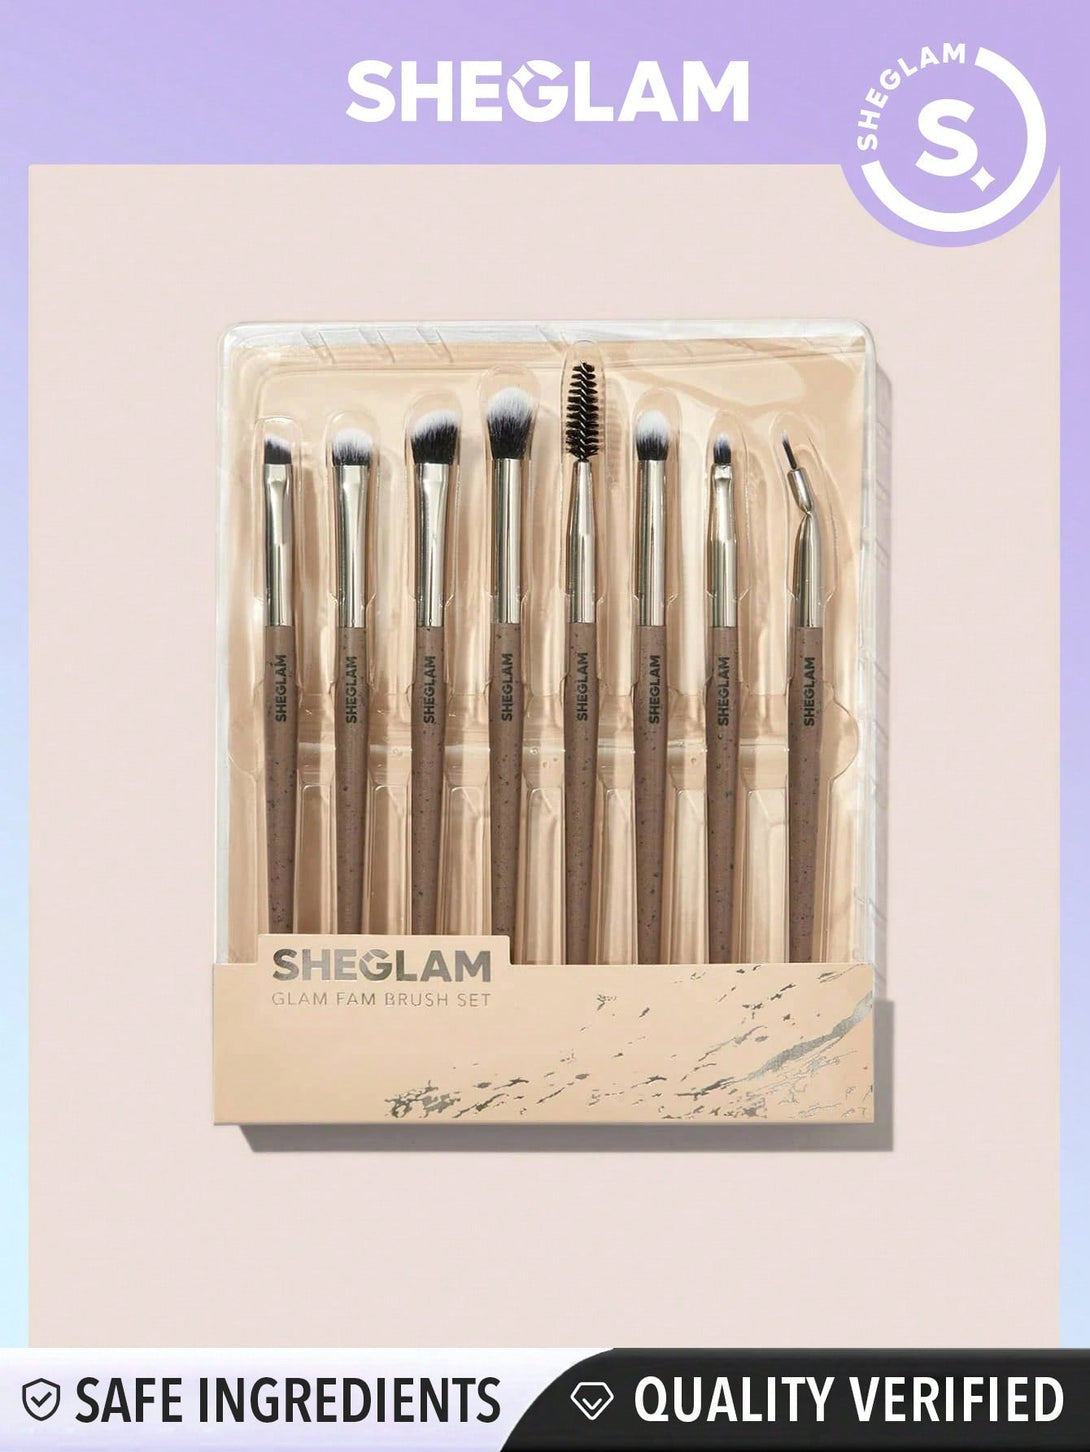 SHEGLAM Glam Fam Brush Set 8 Pcs Makeup Brush Kit Set - Negative Apparel